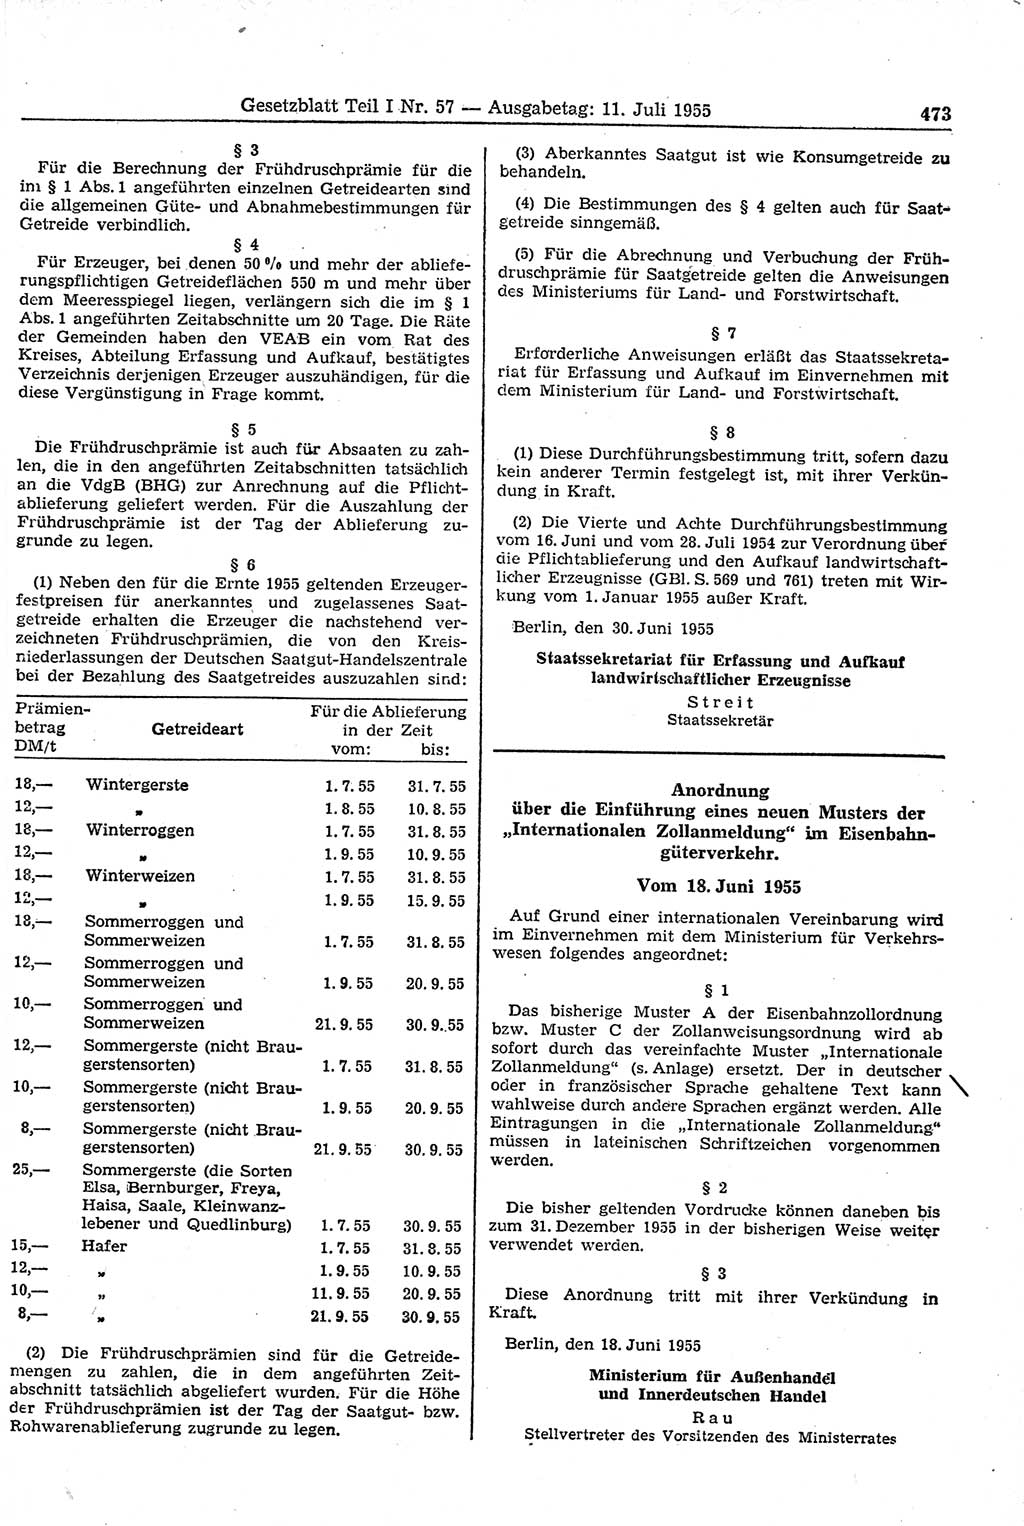 Gesetzblatt (GBl.) der Deutschen Demokratischen Republik (DDR) Teil Ⅰ 1955, Seite 473 (GBl. DDR Ⅰ 1955, S. 473)